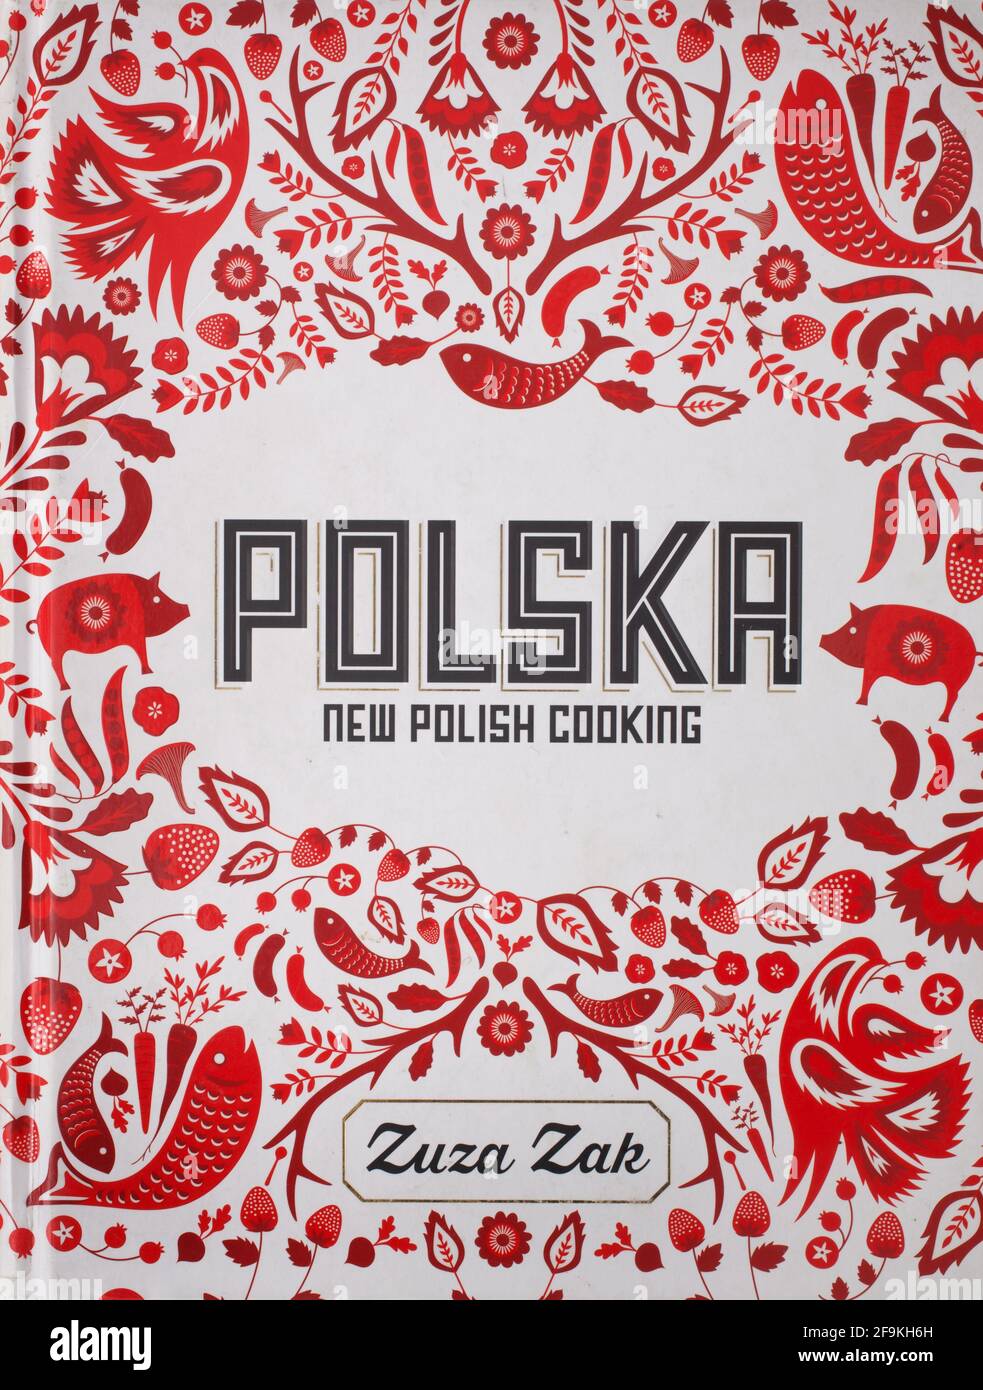 Das Rezeptbuch, Polska neue polnische Küche von Zuza Zak Stockfoto